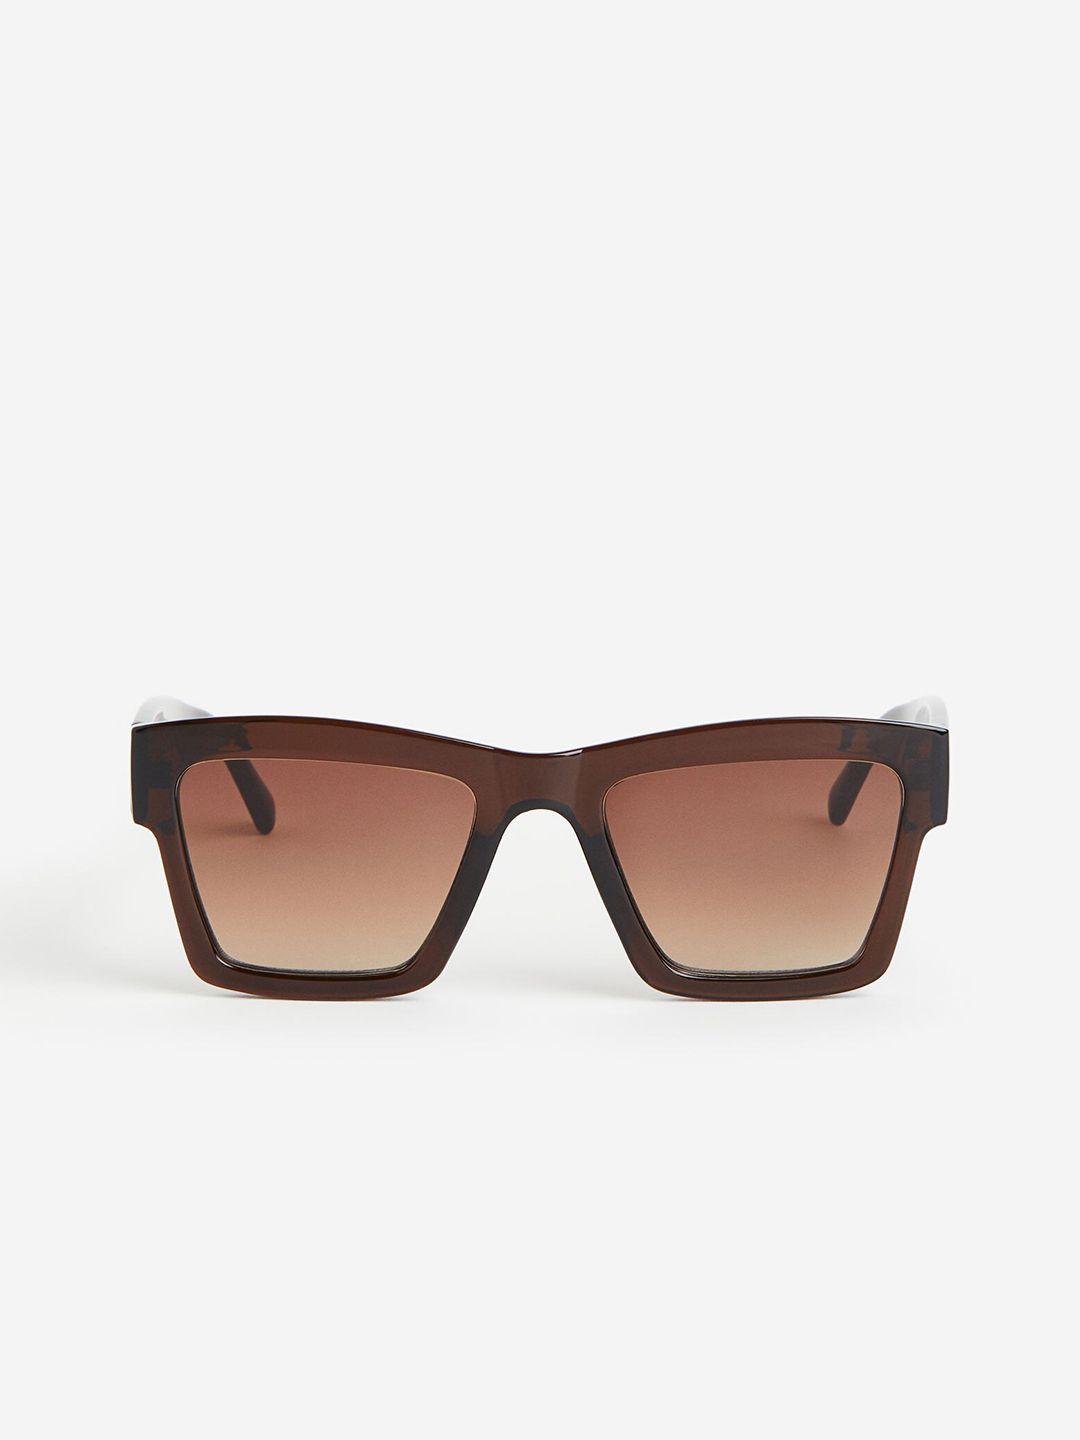 h&m-men-sunglasses-1149605003